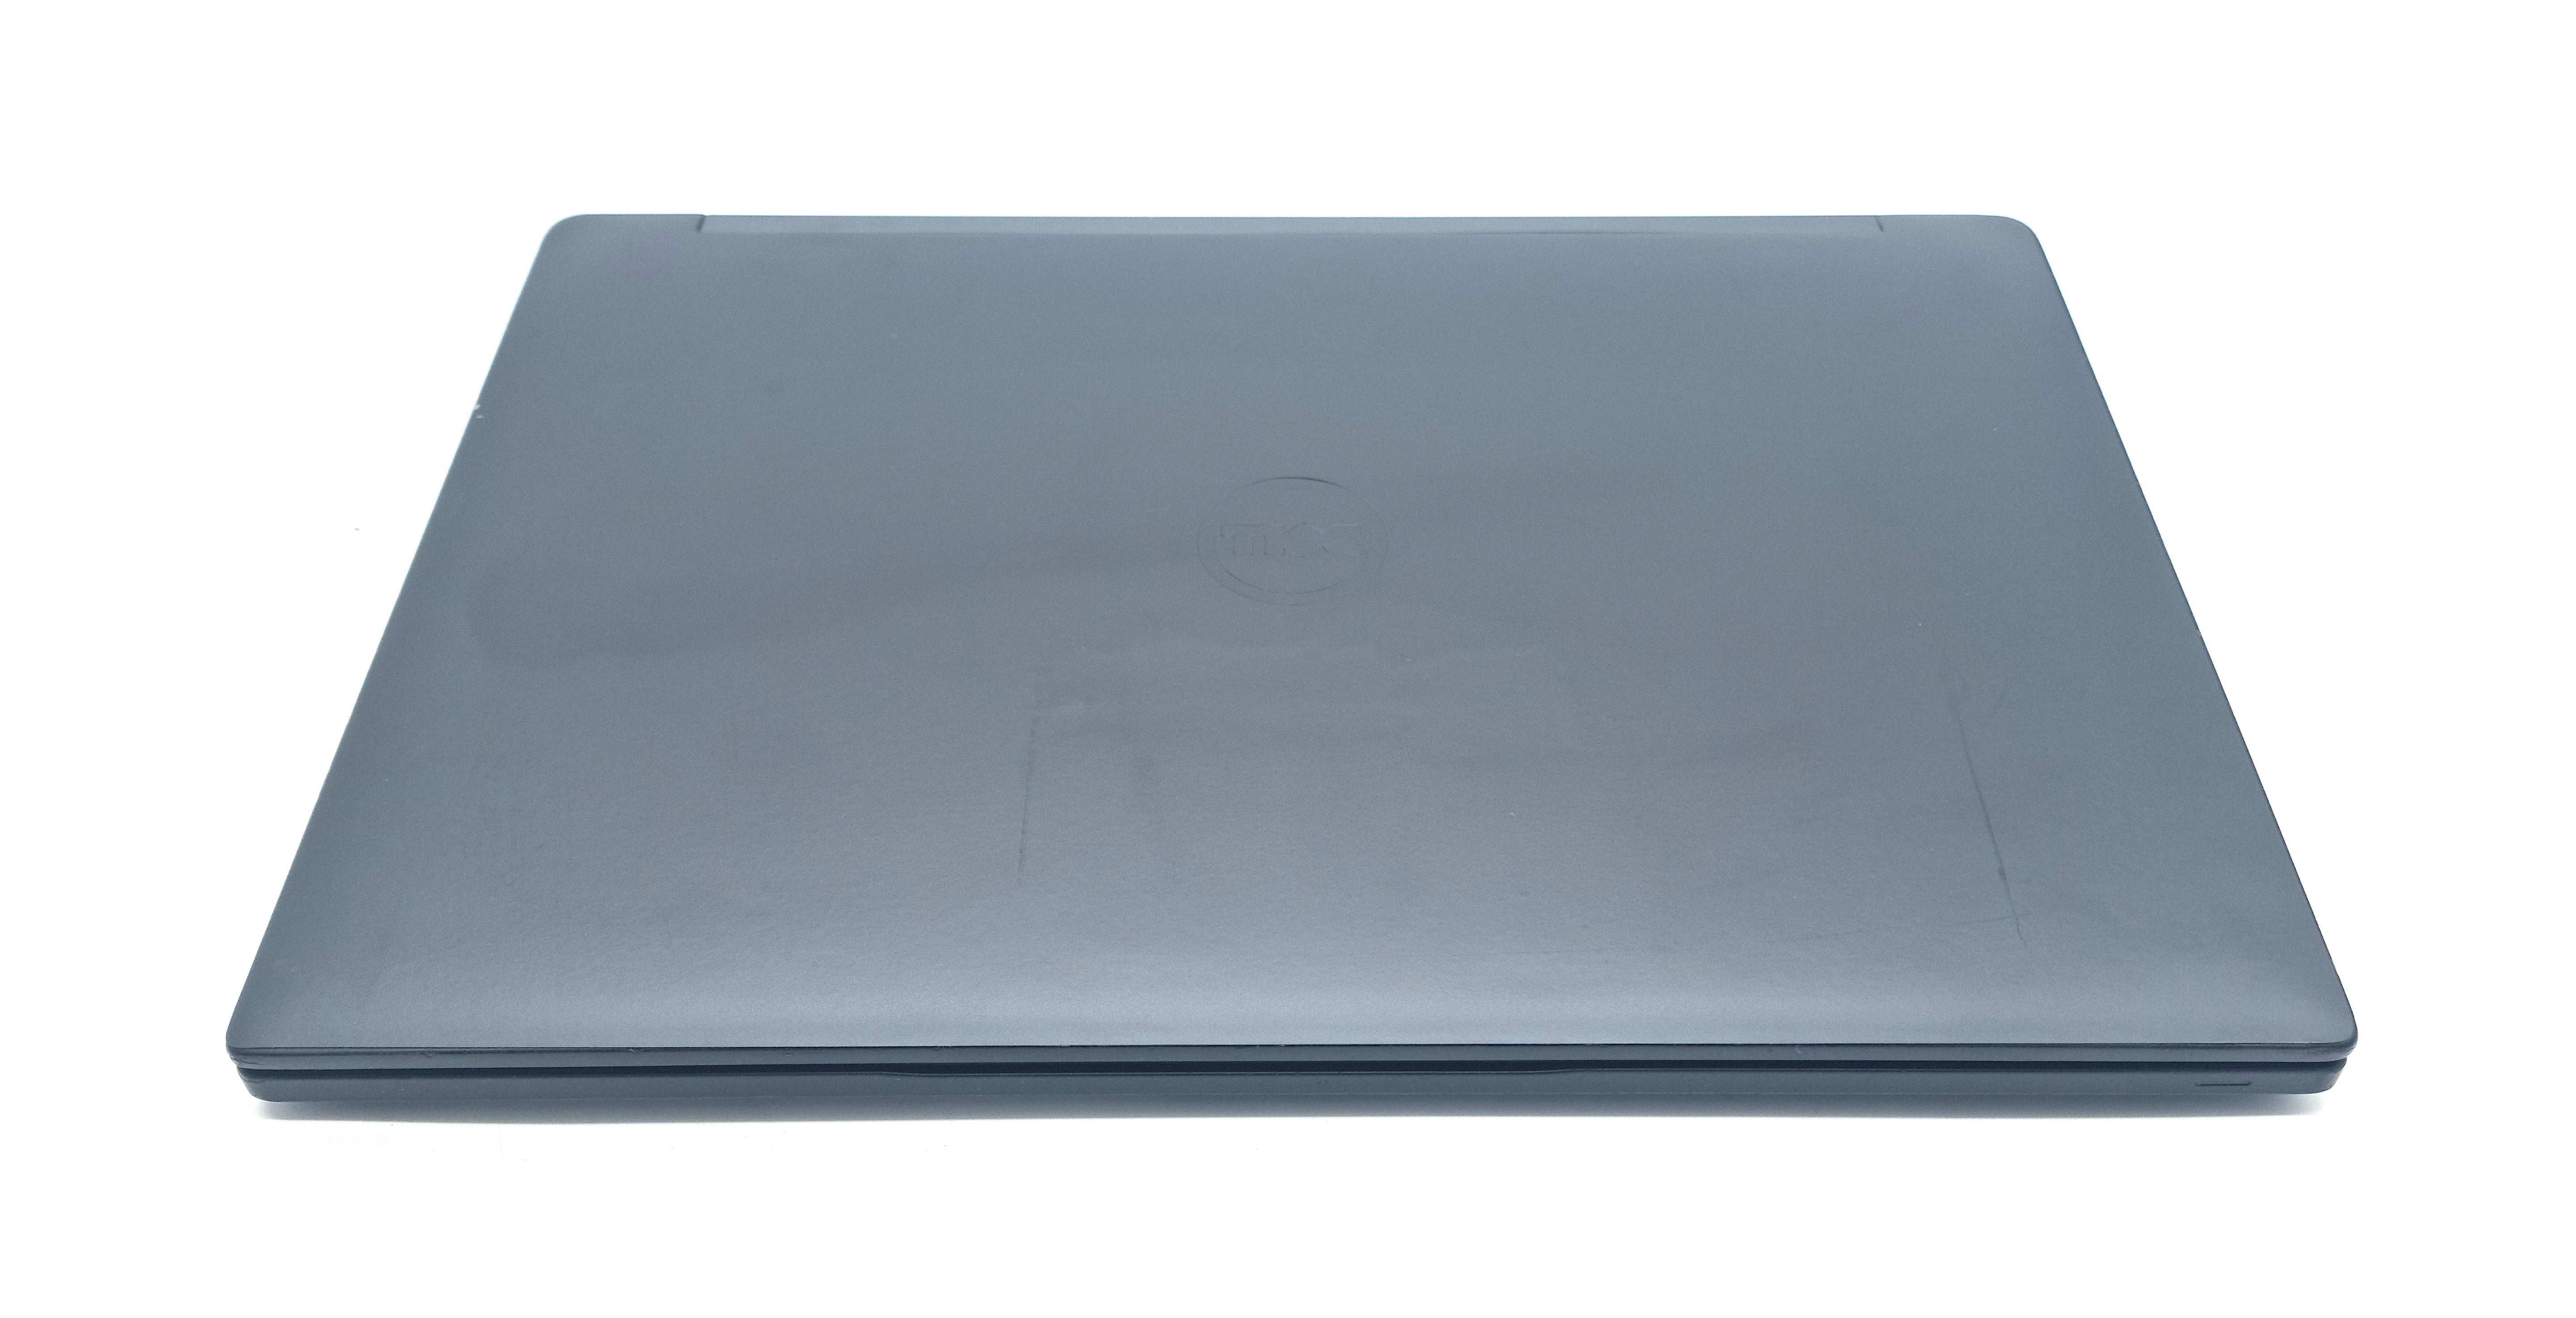 Dell Latitude 7390 Laptop, 13.3" Core i5 8th Gen, 8GB RAM, 256GB SSD